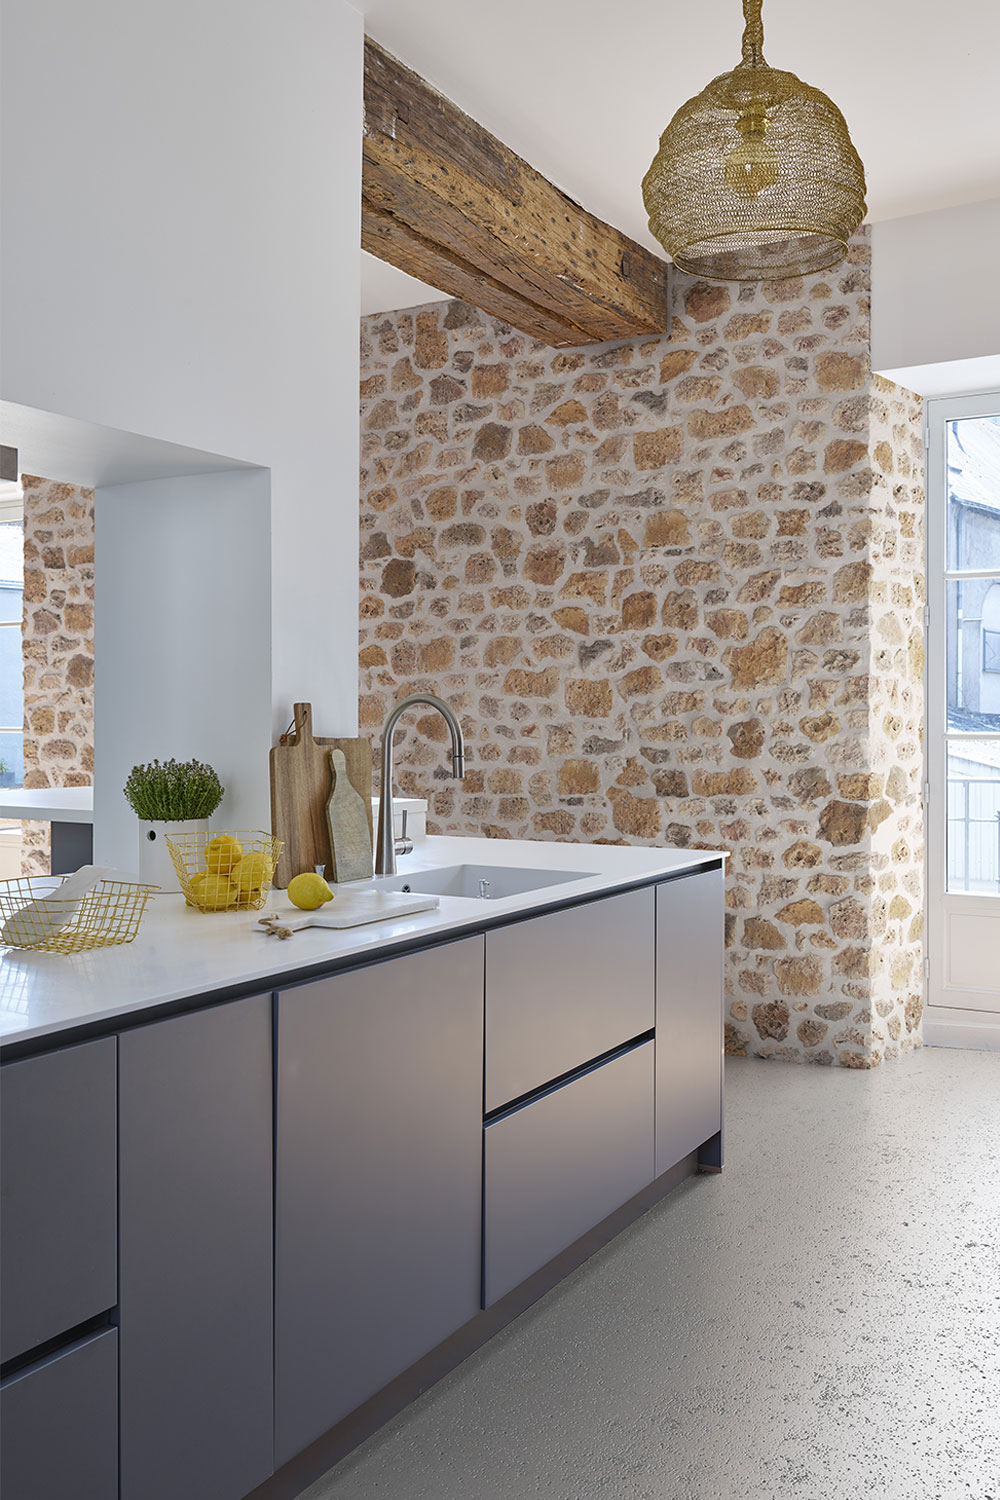 On remarque un élégant contraste entre le mur en brique et le mur plus lisse de la cuisine. Poutres apparentes au plafond.